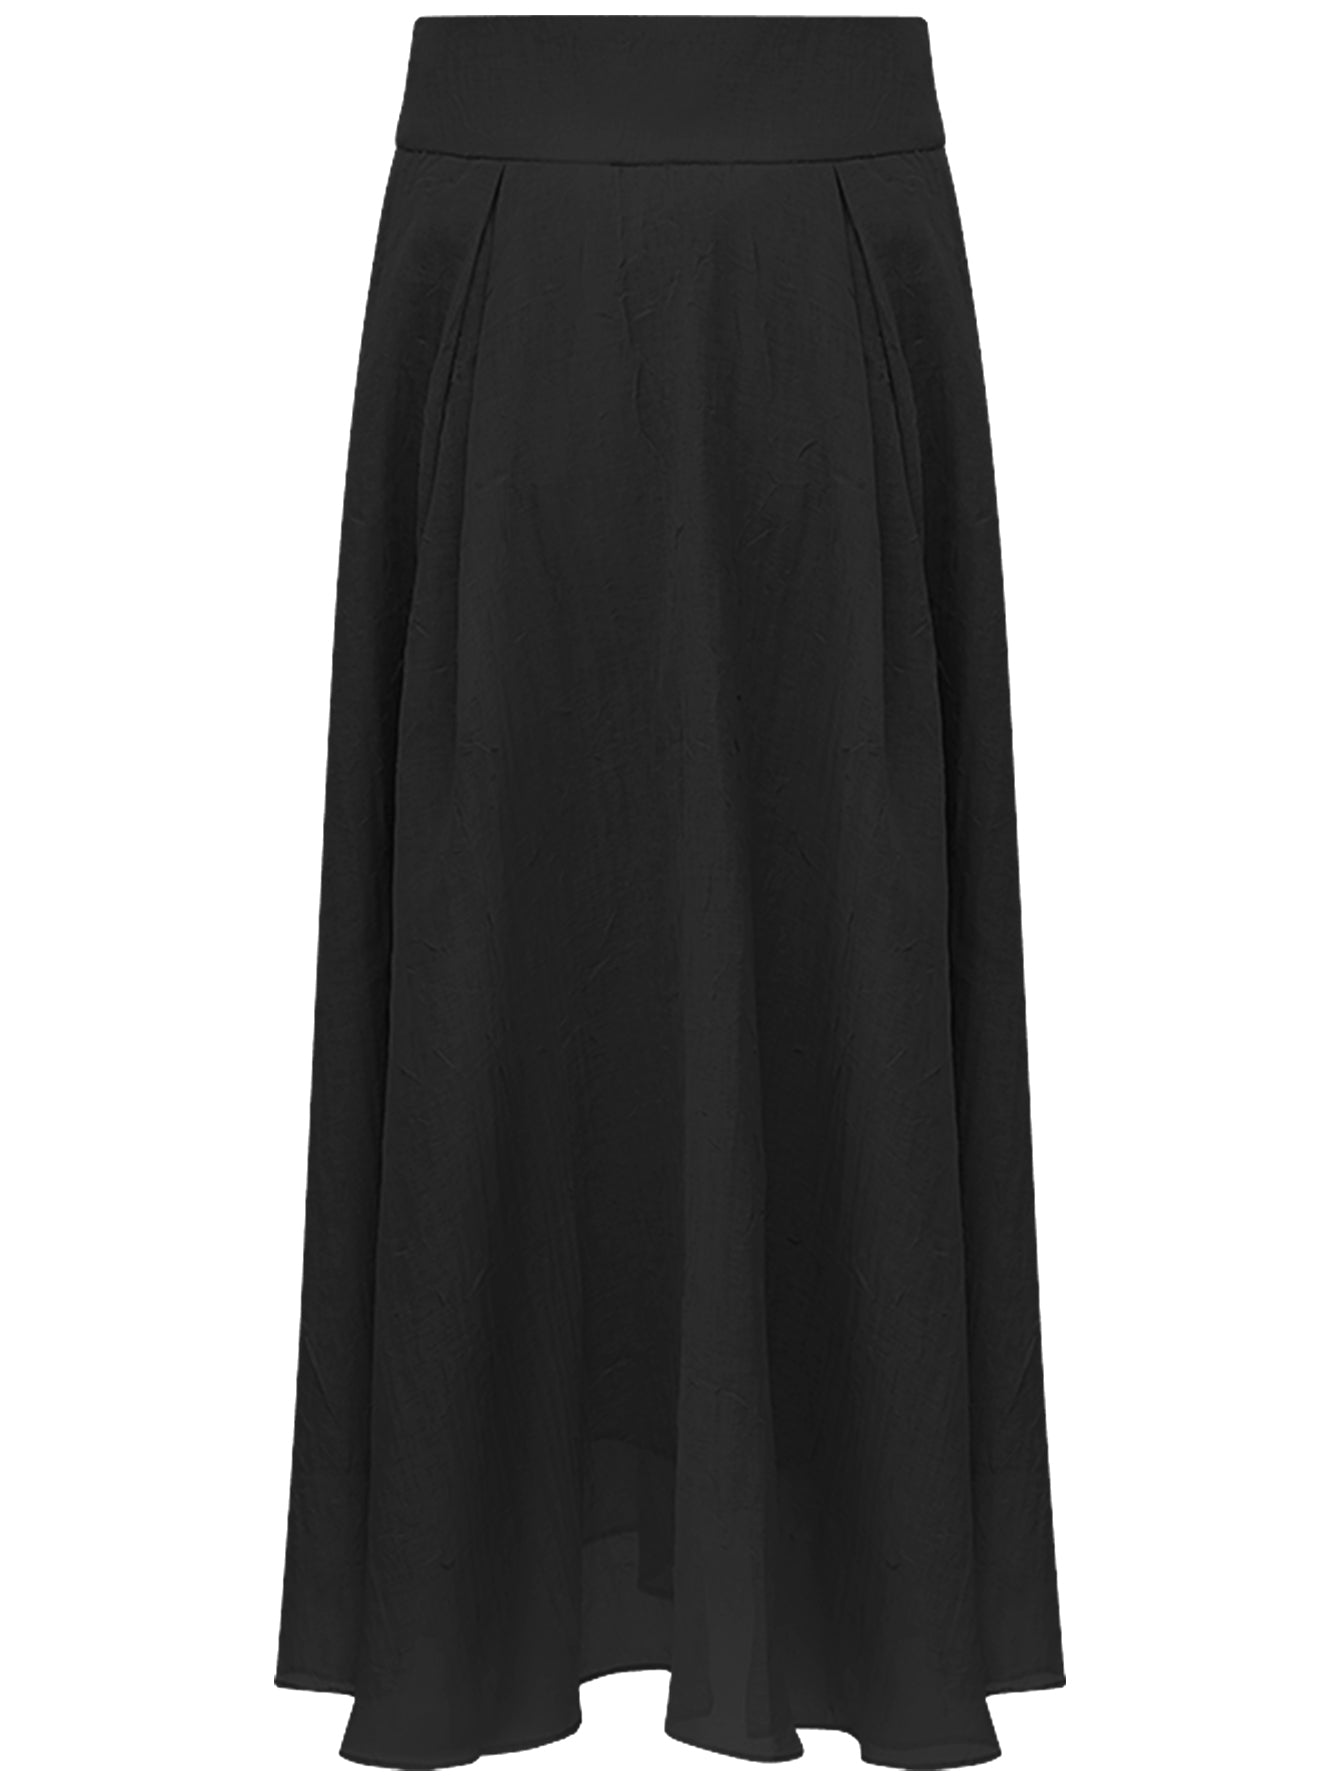 aesthetic-full-length-airy-multi-layered-umbrella-skirt_all_black_4.jpg